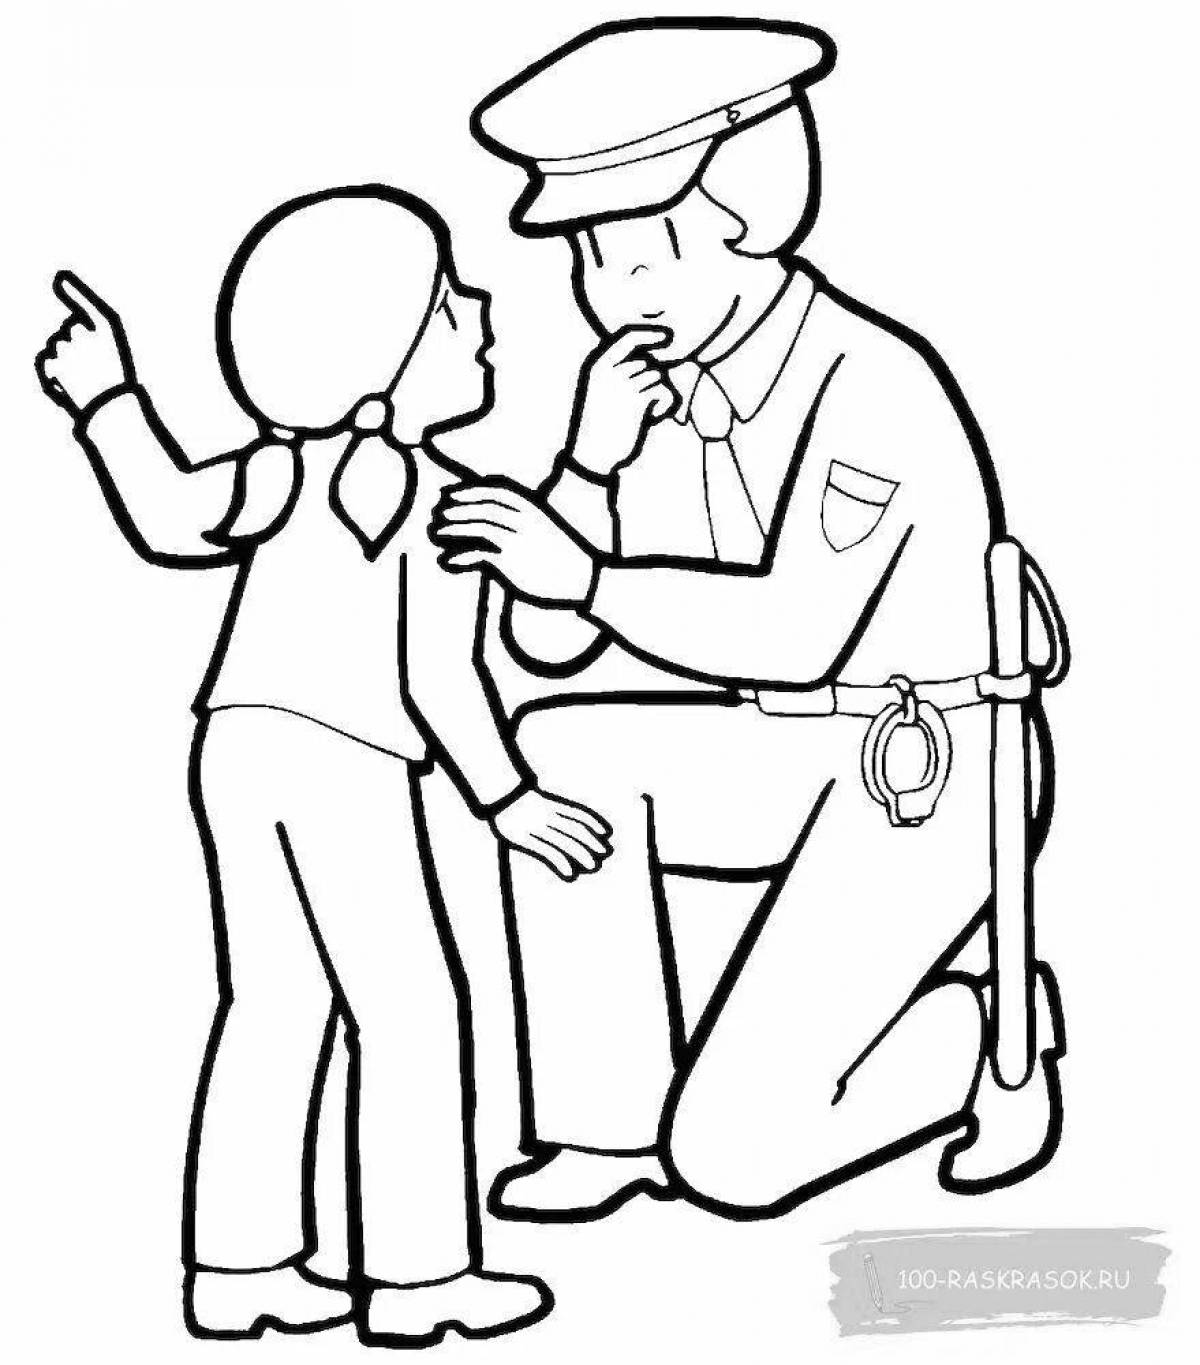 Страница раскраски для детей-полицейских